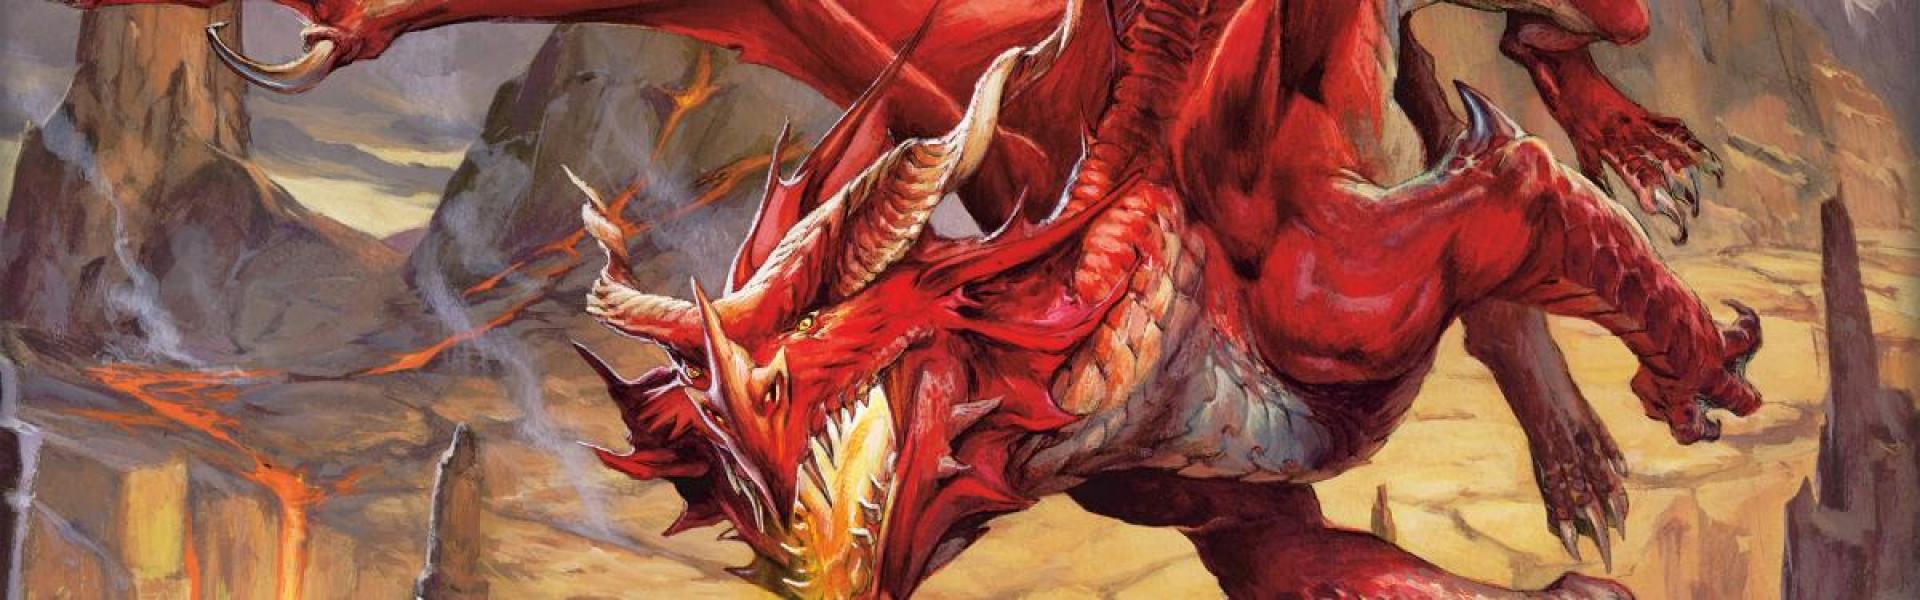 ashardalon dungeons dragons